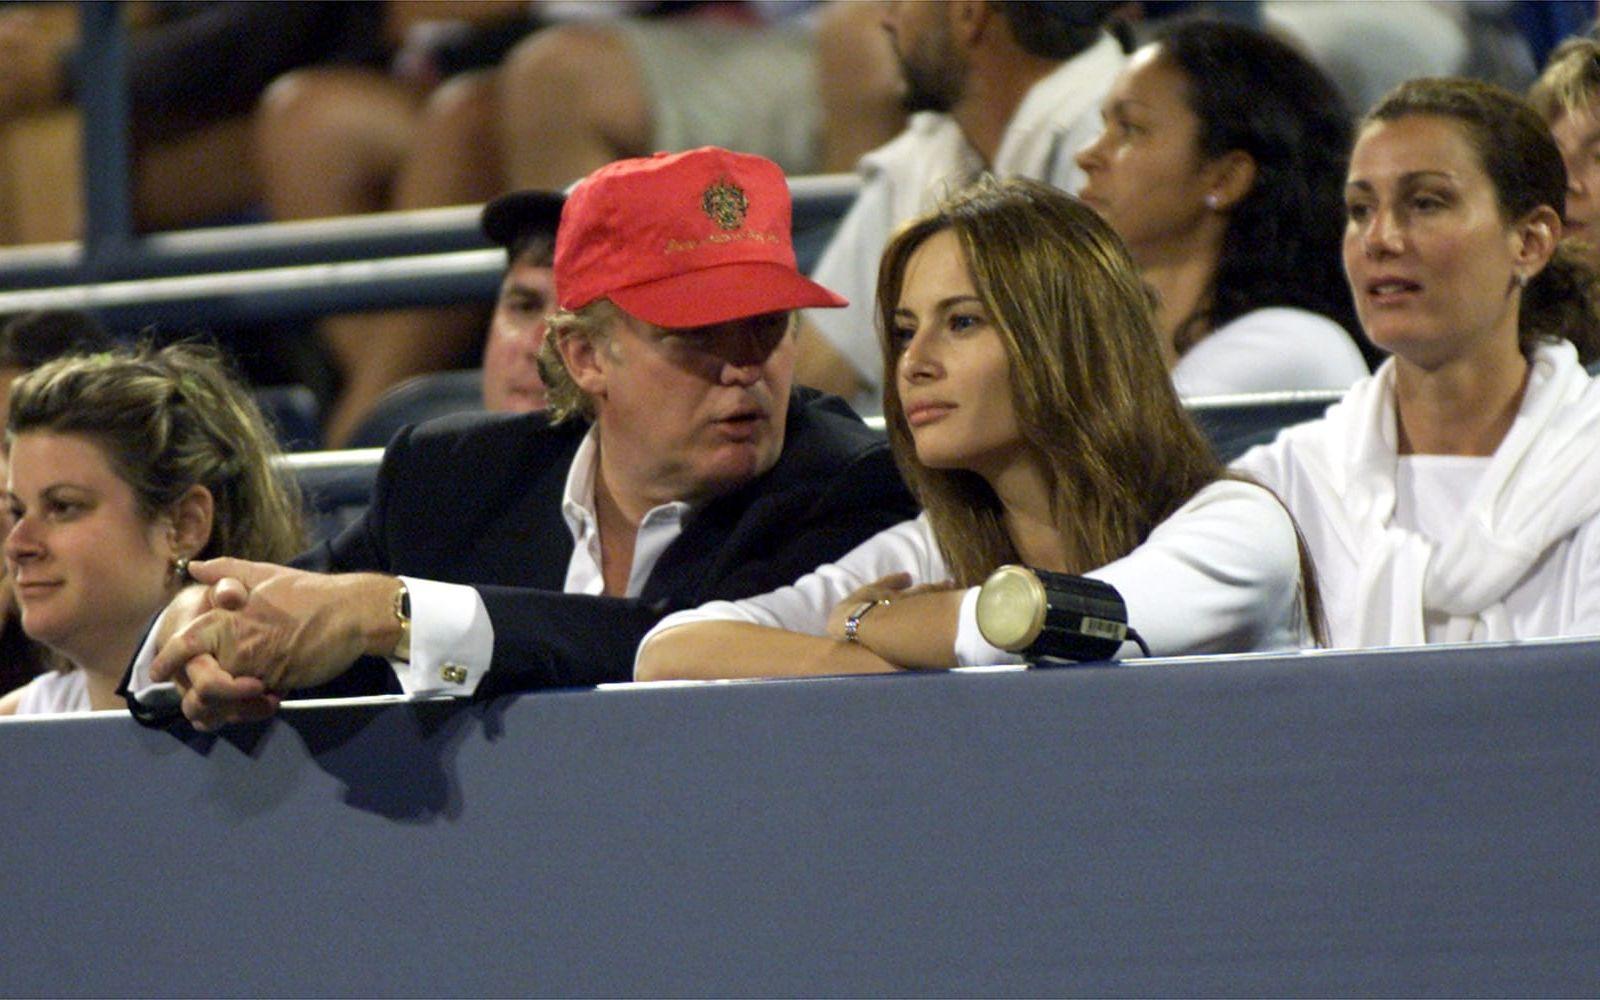 <strong>4 september, 1999:</strong> Donald Trump och Melania Knuass, en fotomodell från Slovenien, besöker US Open i New York. De två träffades under modeveckan i New York i september året innan. Foto: AP Photo/Kathy Willens